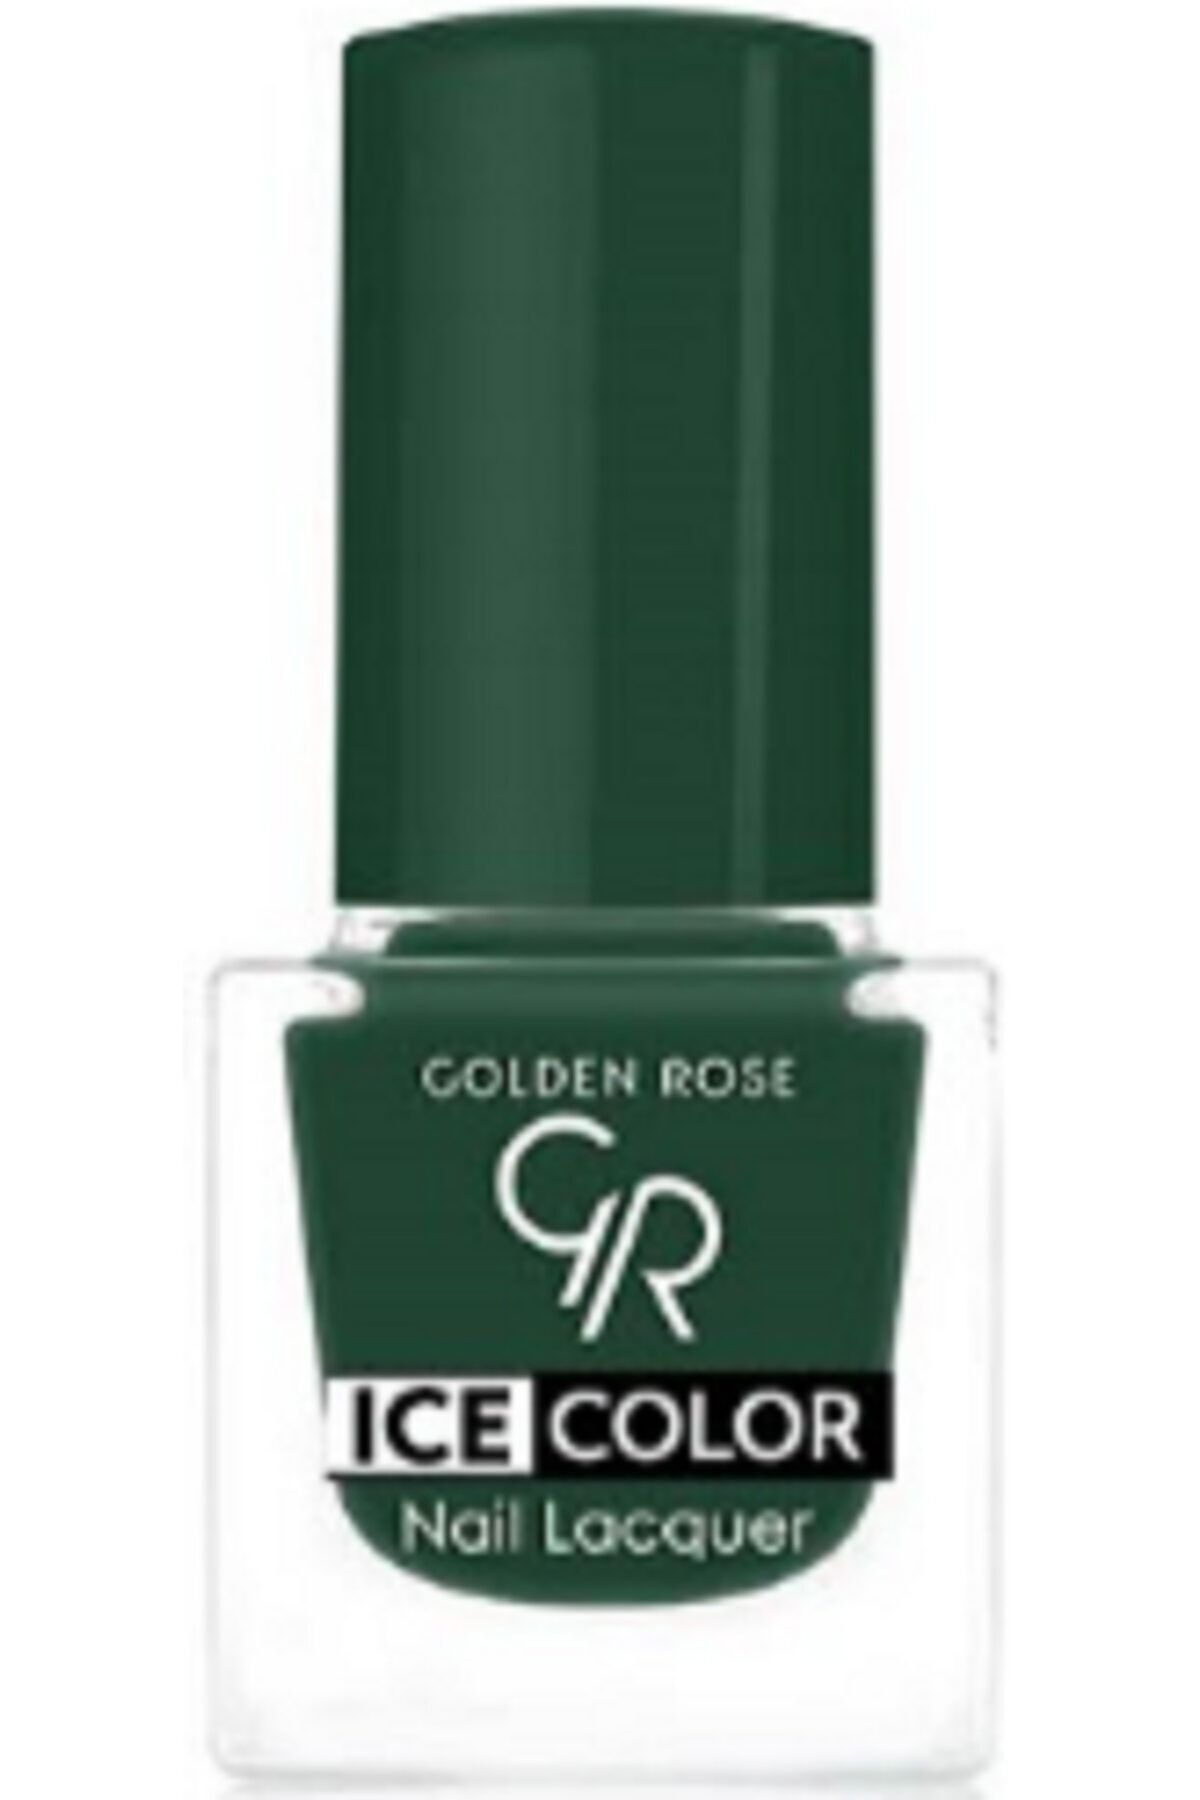 لاک ناخن یخی آیس چیک ICE شماره 189 رنگ سبز گلدن رز Golden Rose